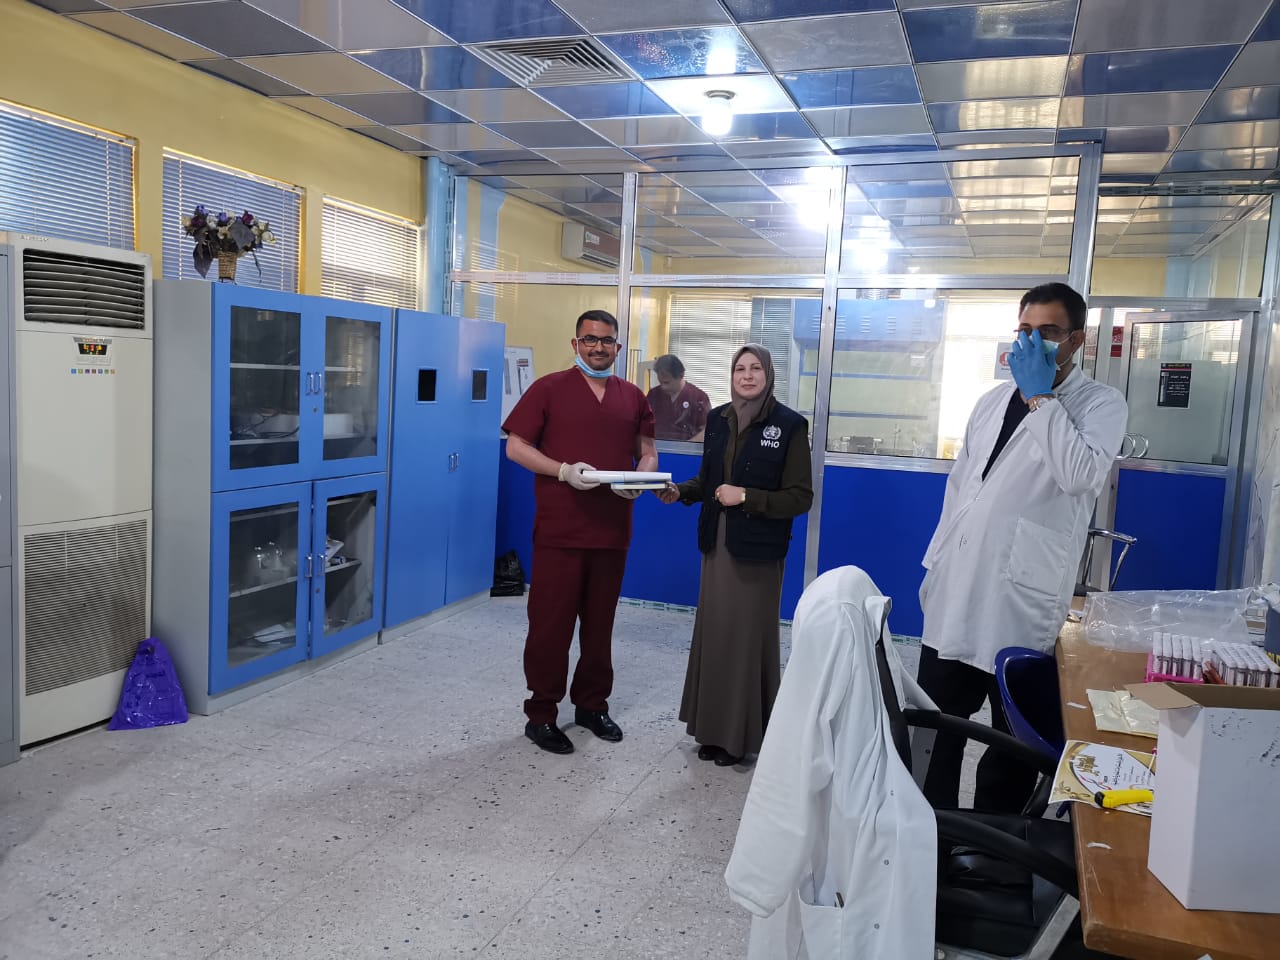 منظمة الصحة العالمية تكرم الفريق البحثي المحضر والمنتج للوسط الزرعي الناقل في جامعة البصرة